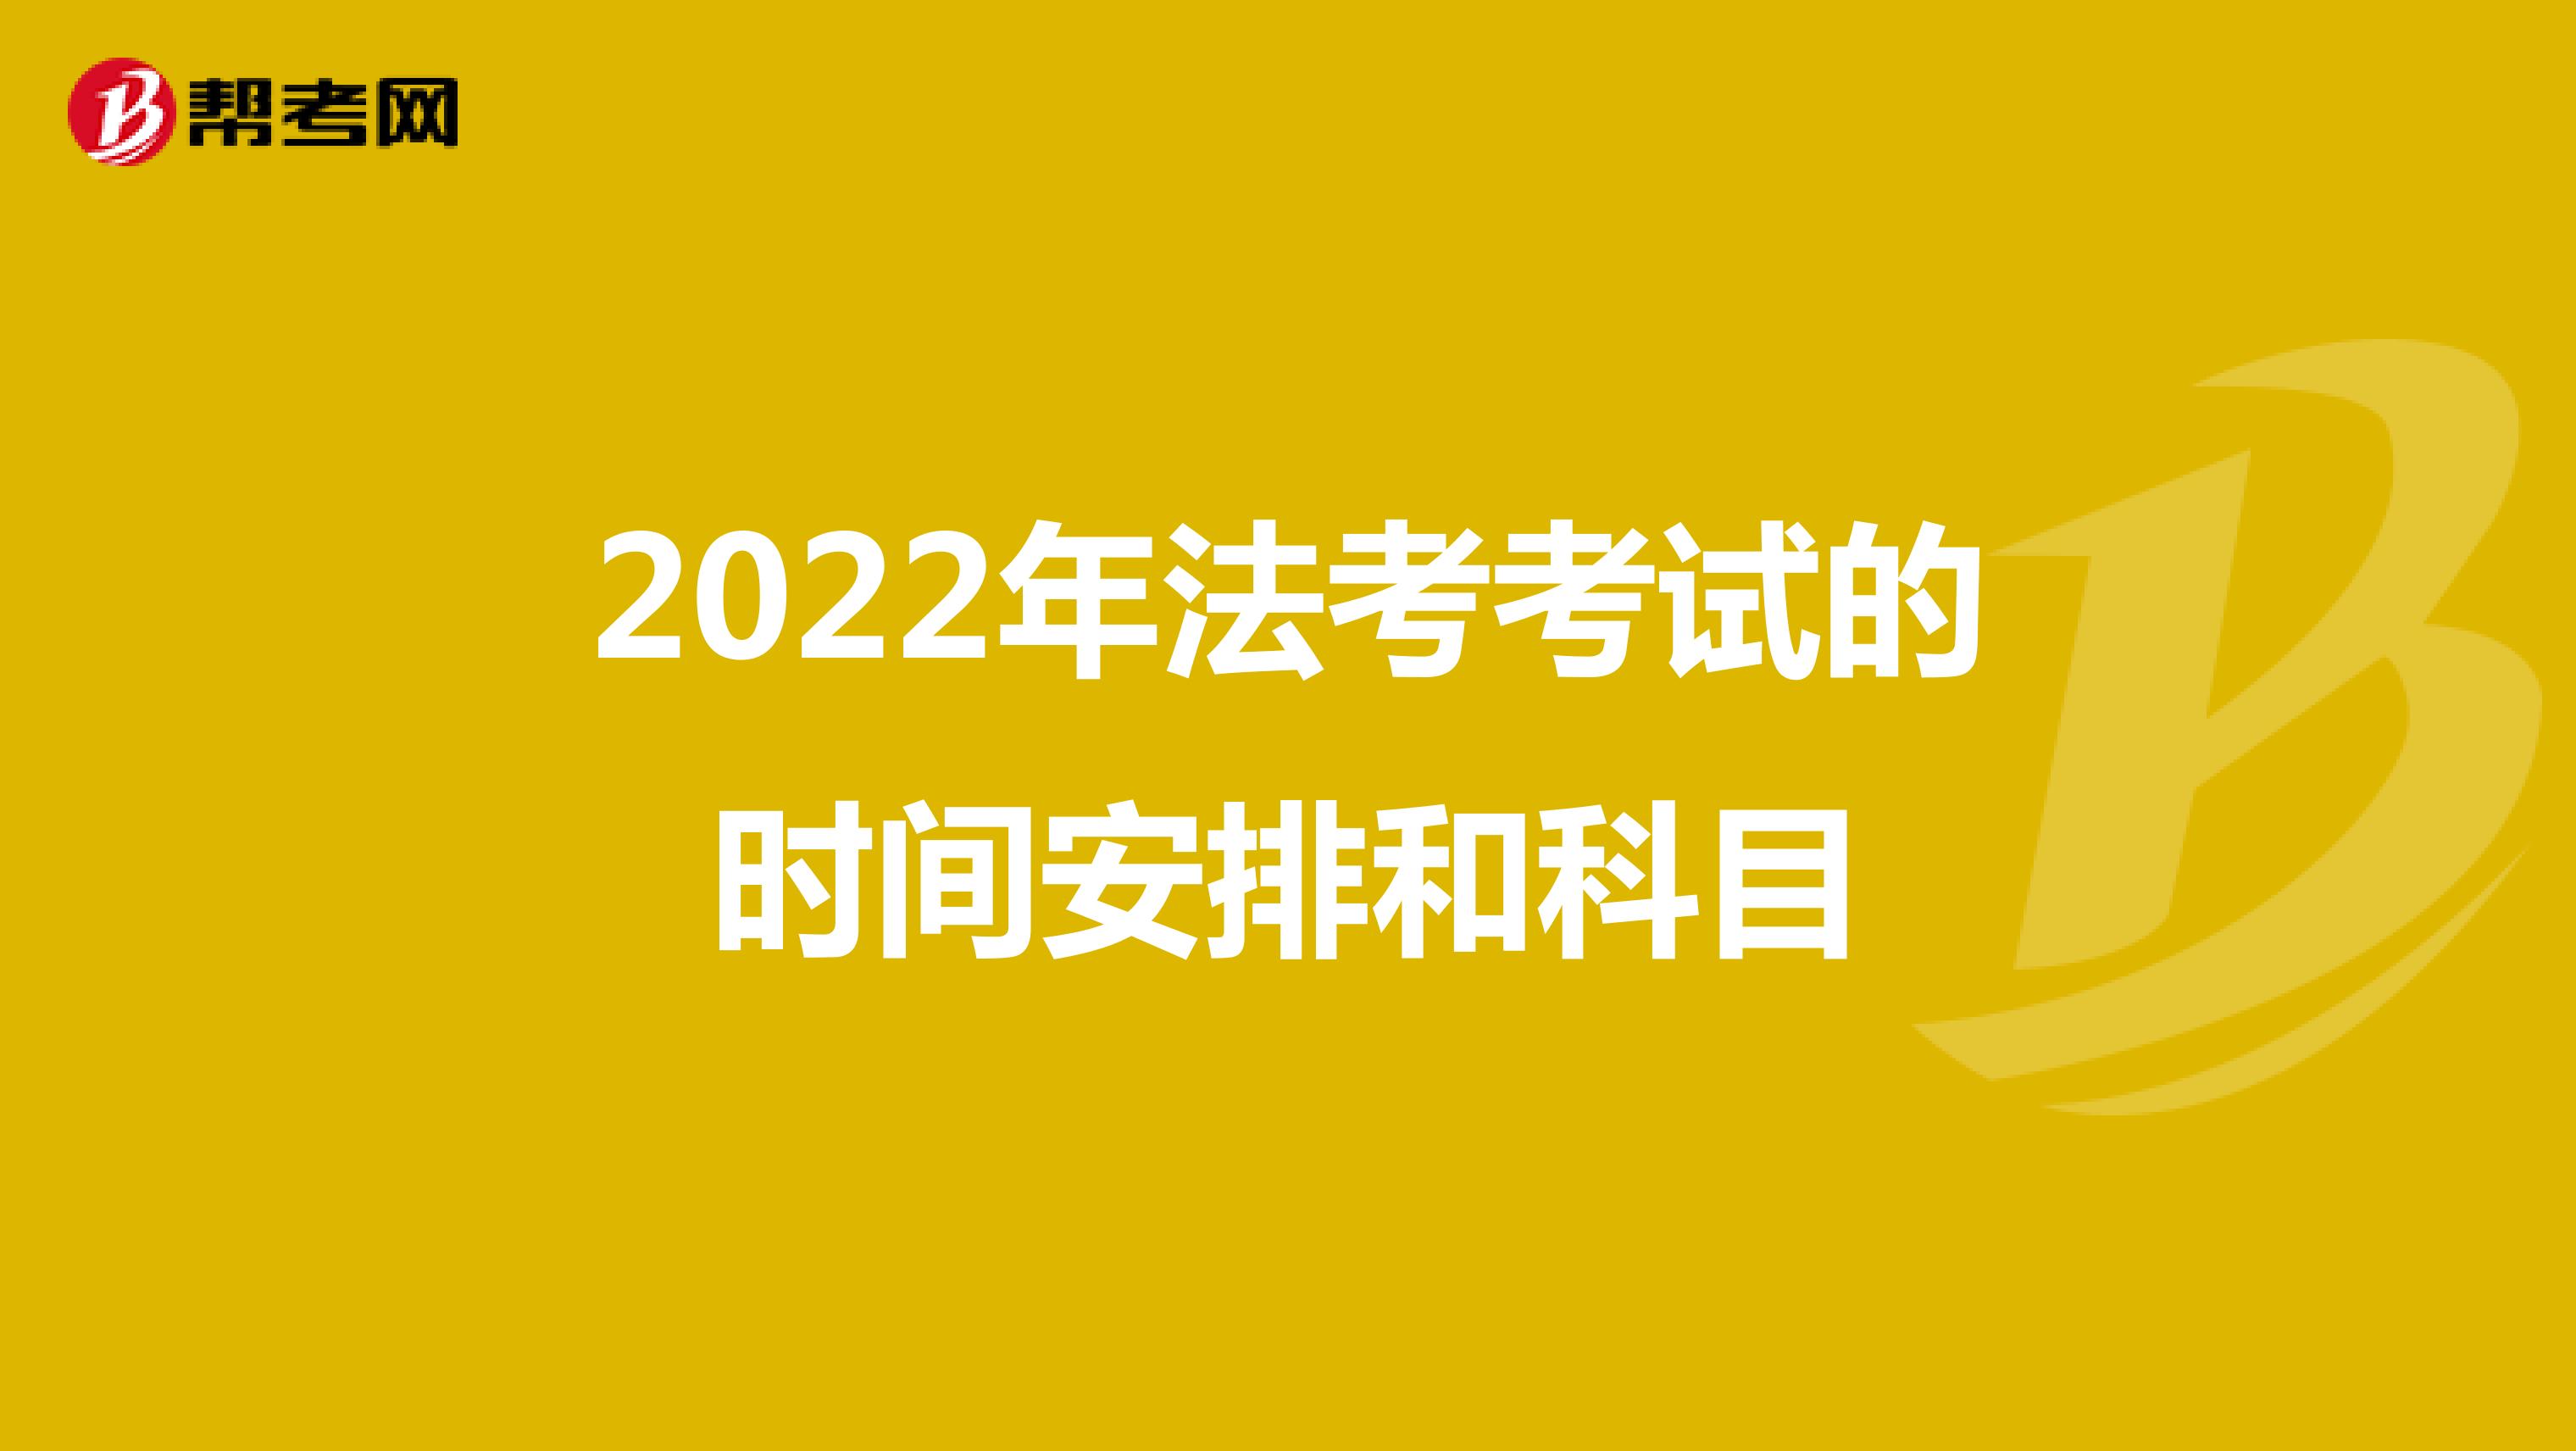 2022年法考考试的时间安排和科目